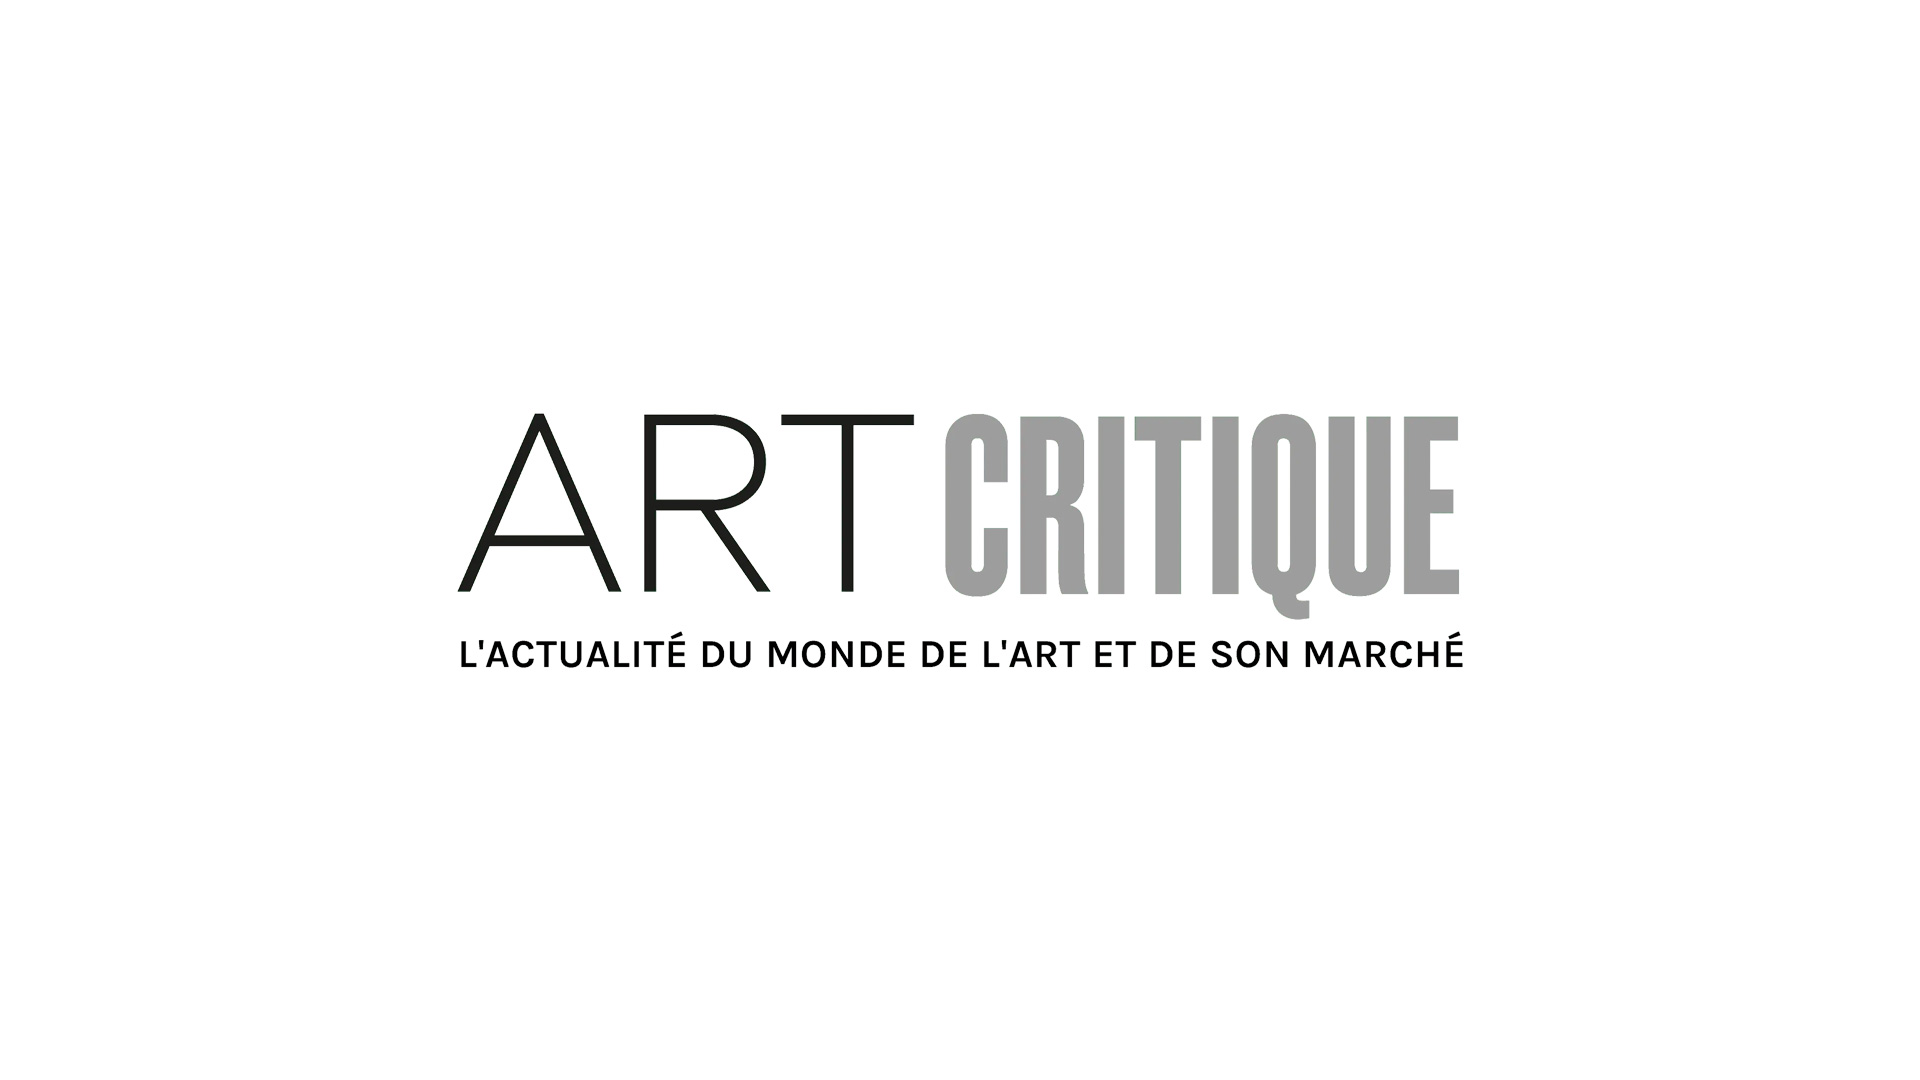 “The figurative Mondrian”